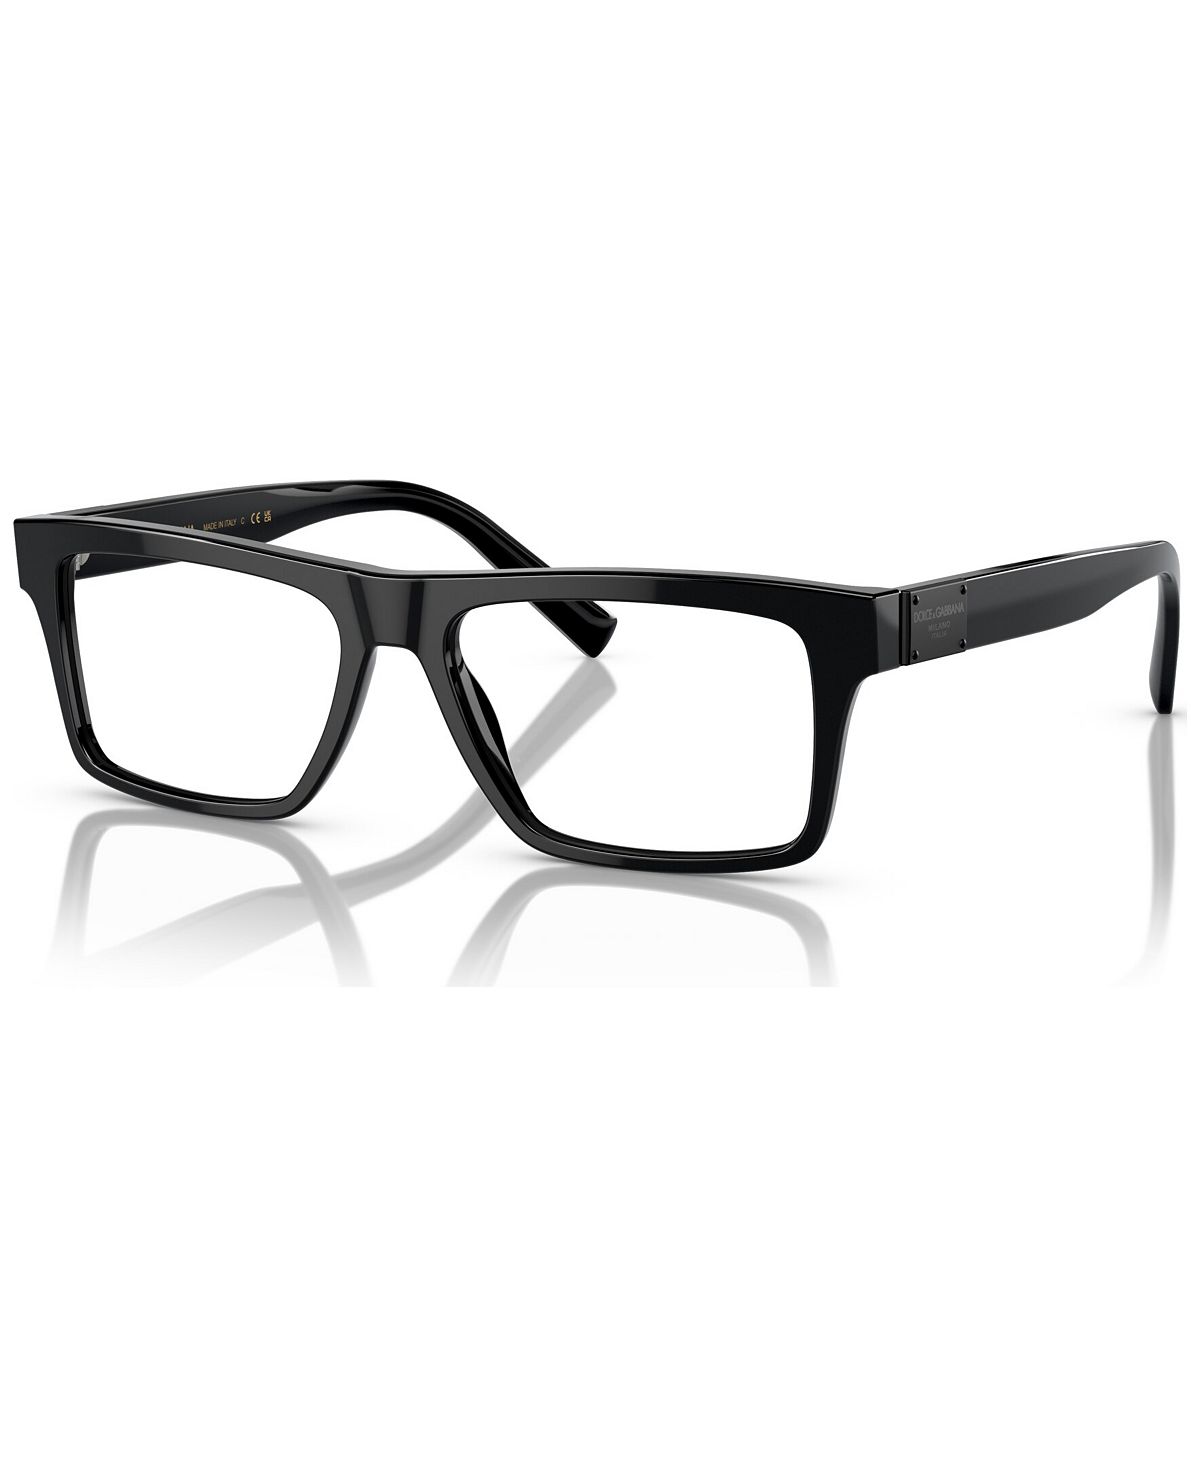 Мужские прямоугольные очки, DG3368 54 Dolce&Gabbana